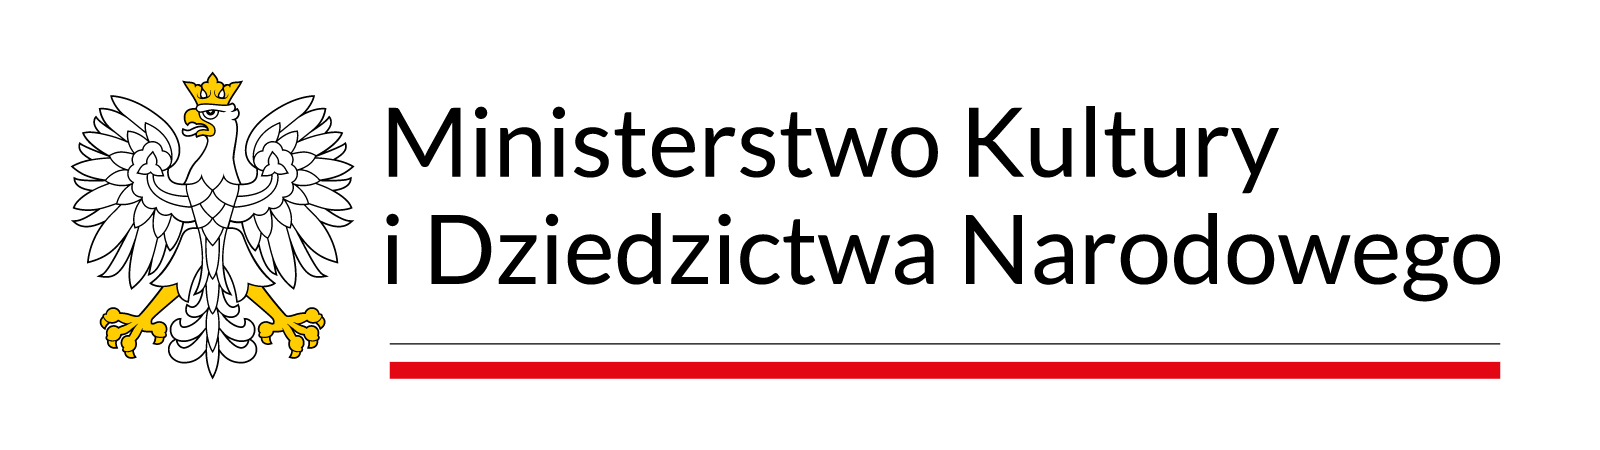 Logotyp Ministerstwa Kultury i Dziedzictwa Narodowego. Napis, orzeł w koronie oraz flaga Polski.